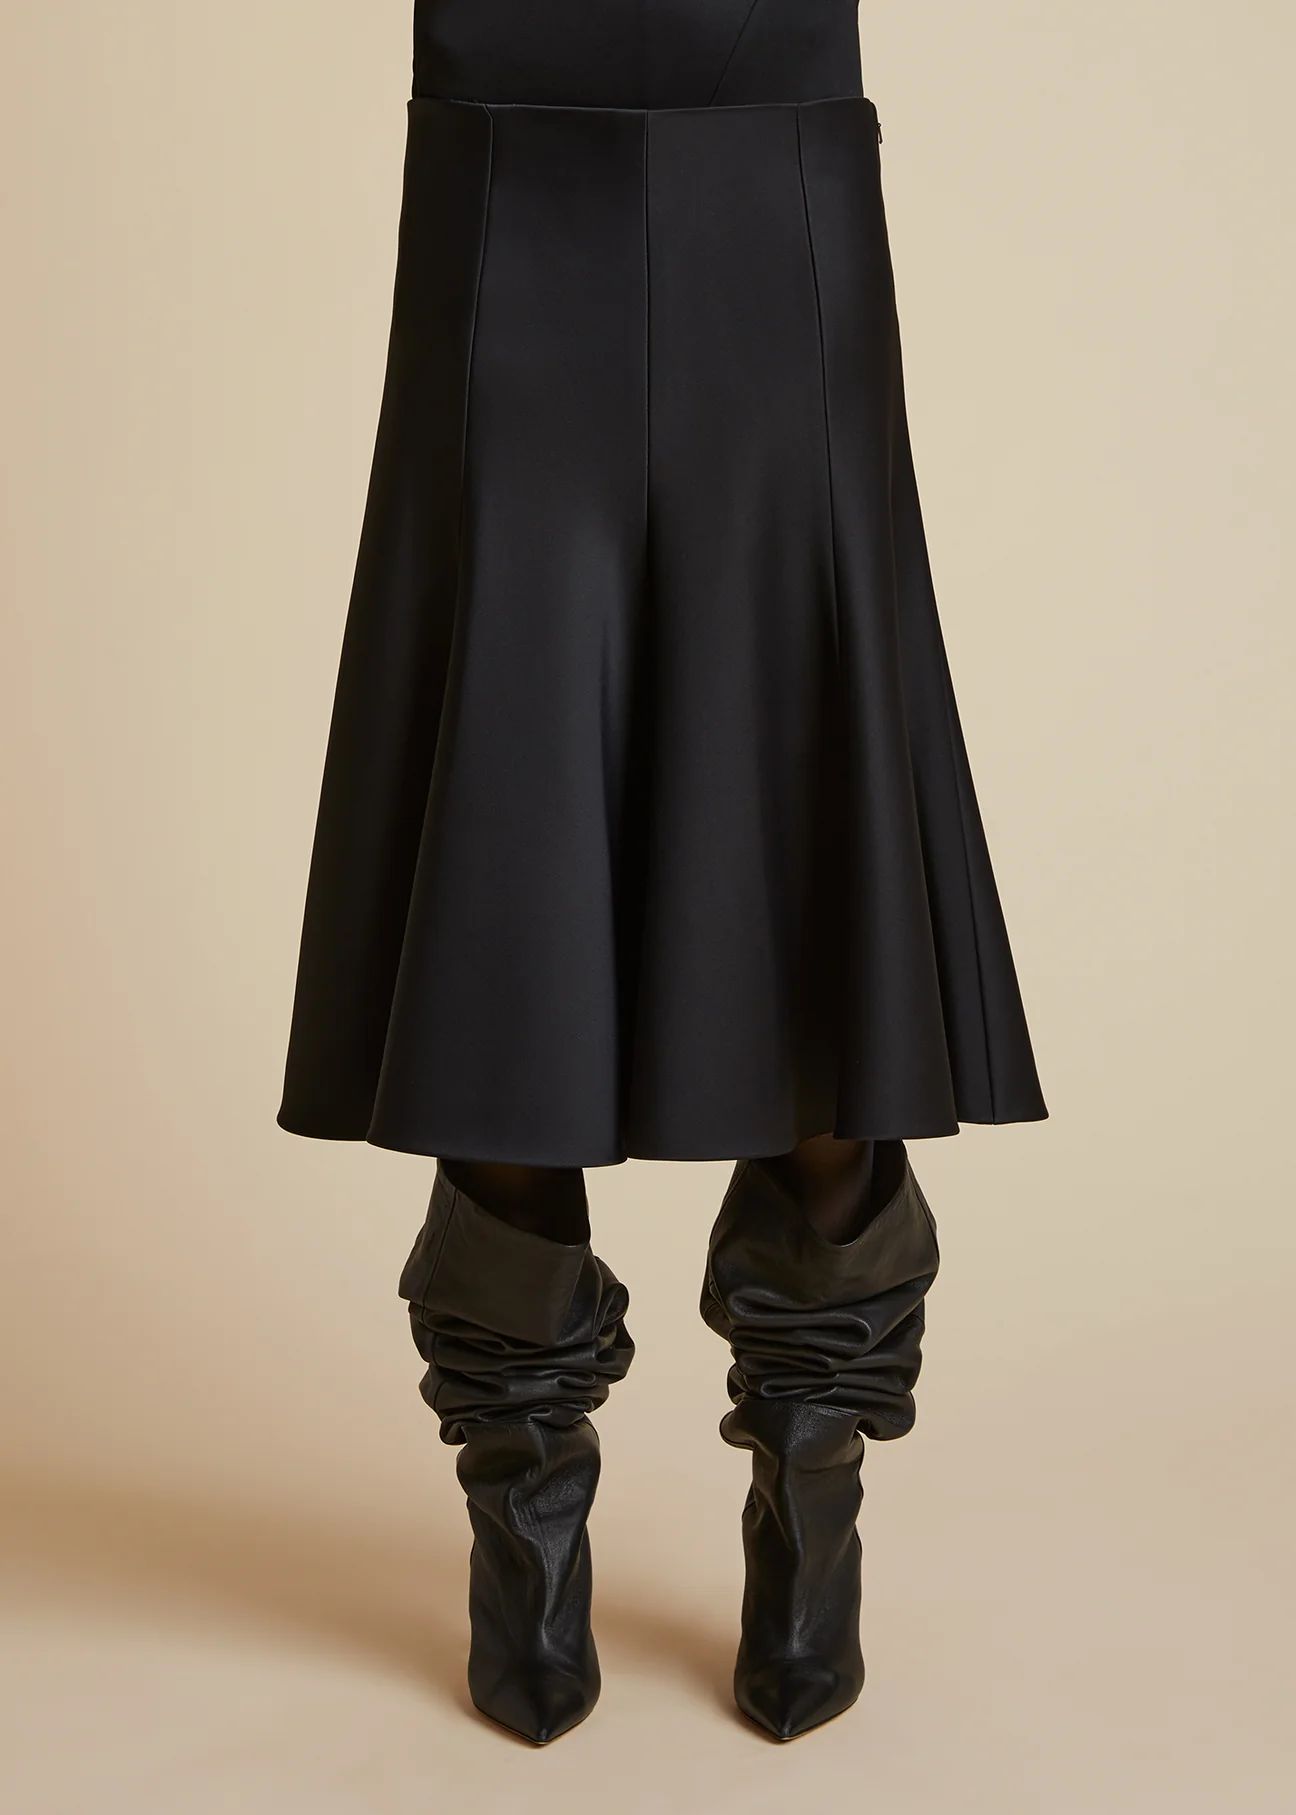 The Lennox Skirt in Black | Khaite